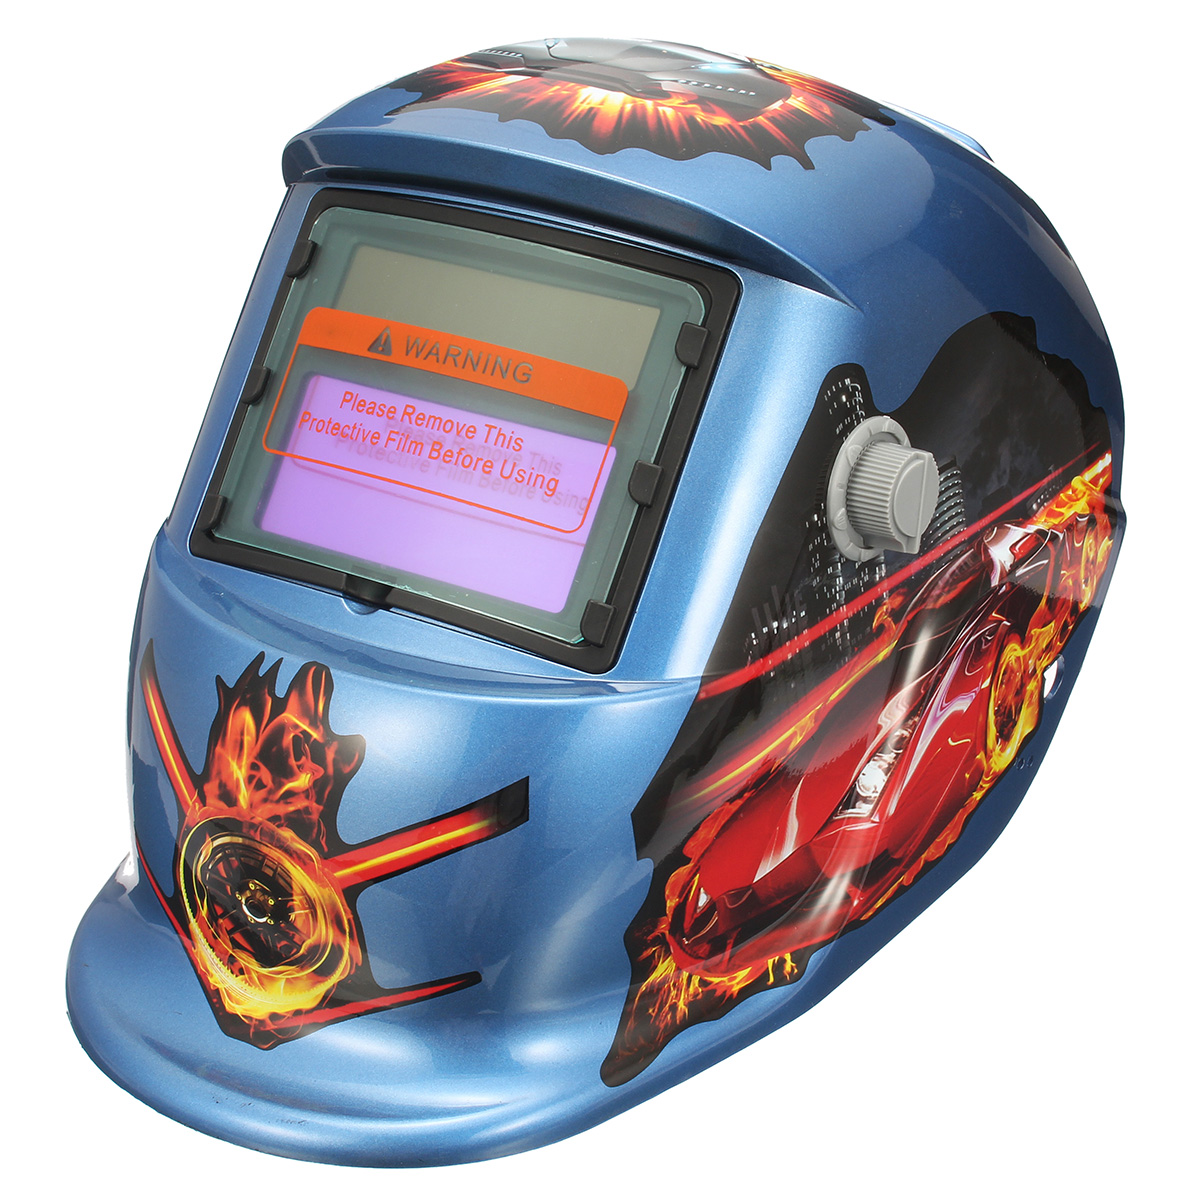 Fire-Pro-Solar-Auto-Welding-Darkening-Helmet-Arc-Tig-mig-Grinding-Welders-Mask-1326755-1